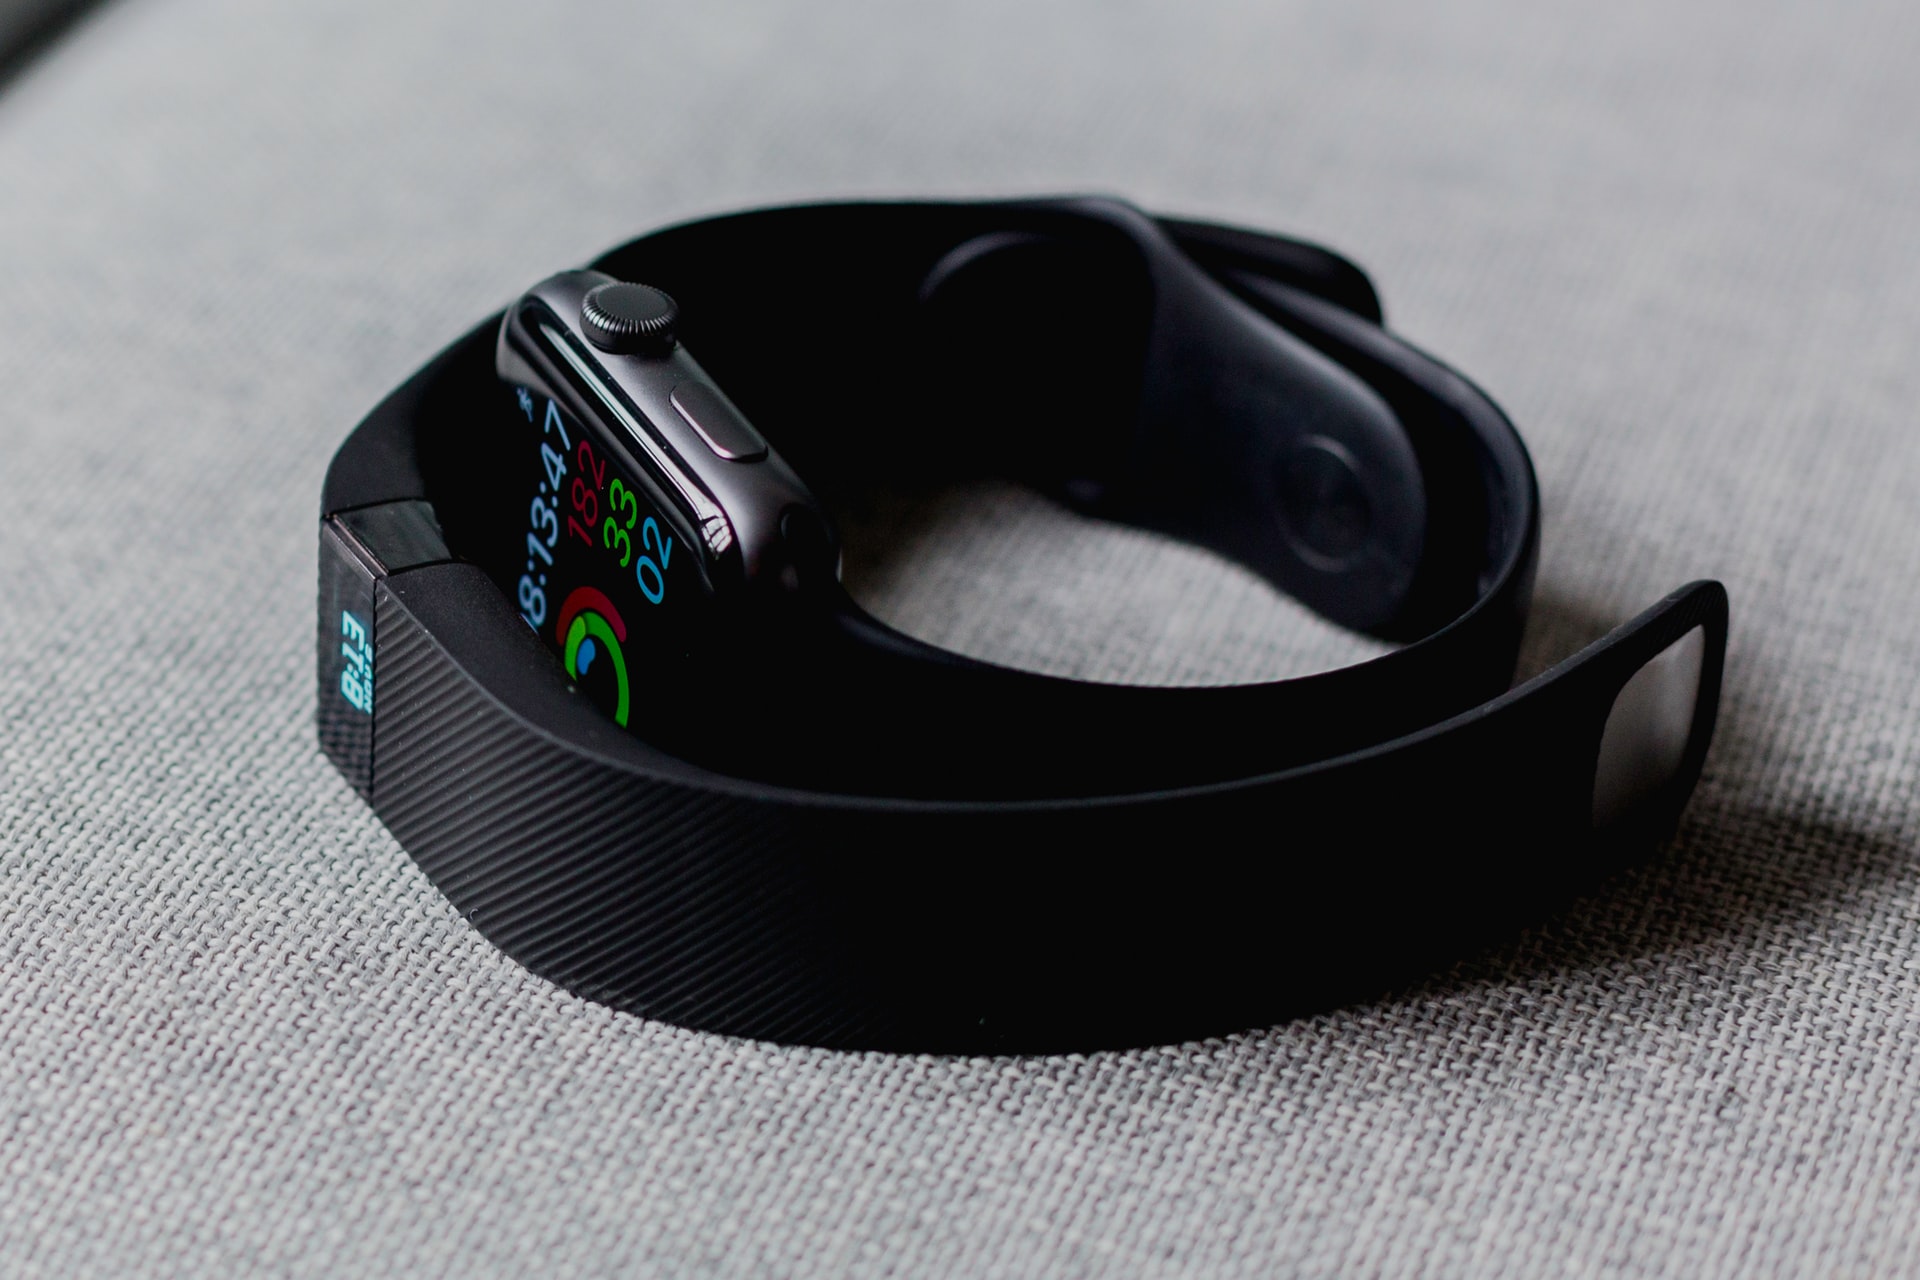 Fitbit ရဲ့ Luxury ပုံစံ ဒီဇိုင်းအသစ်များကို အနာဂါတ်တွင် တွေ့မြင်လာရတော့မှာလား?